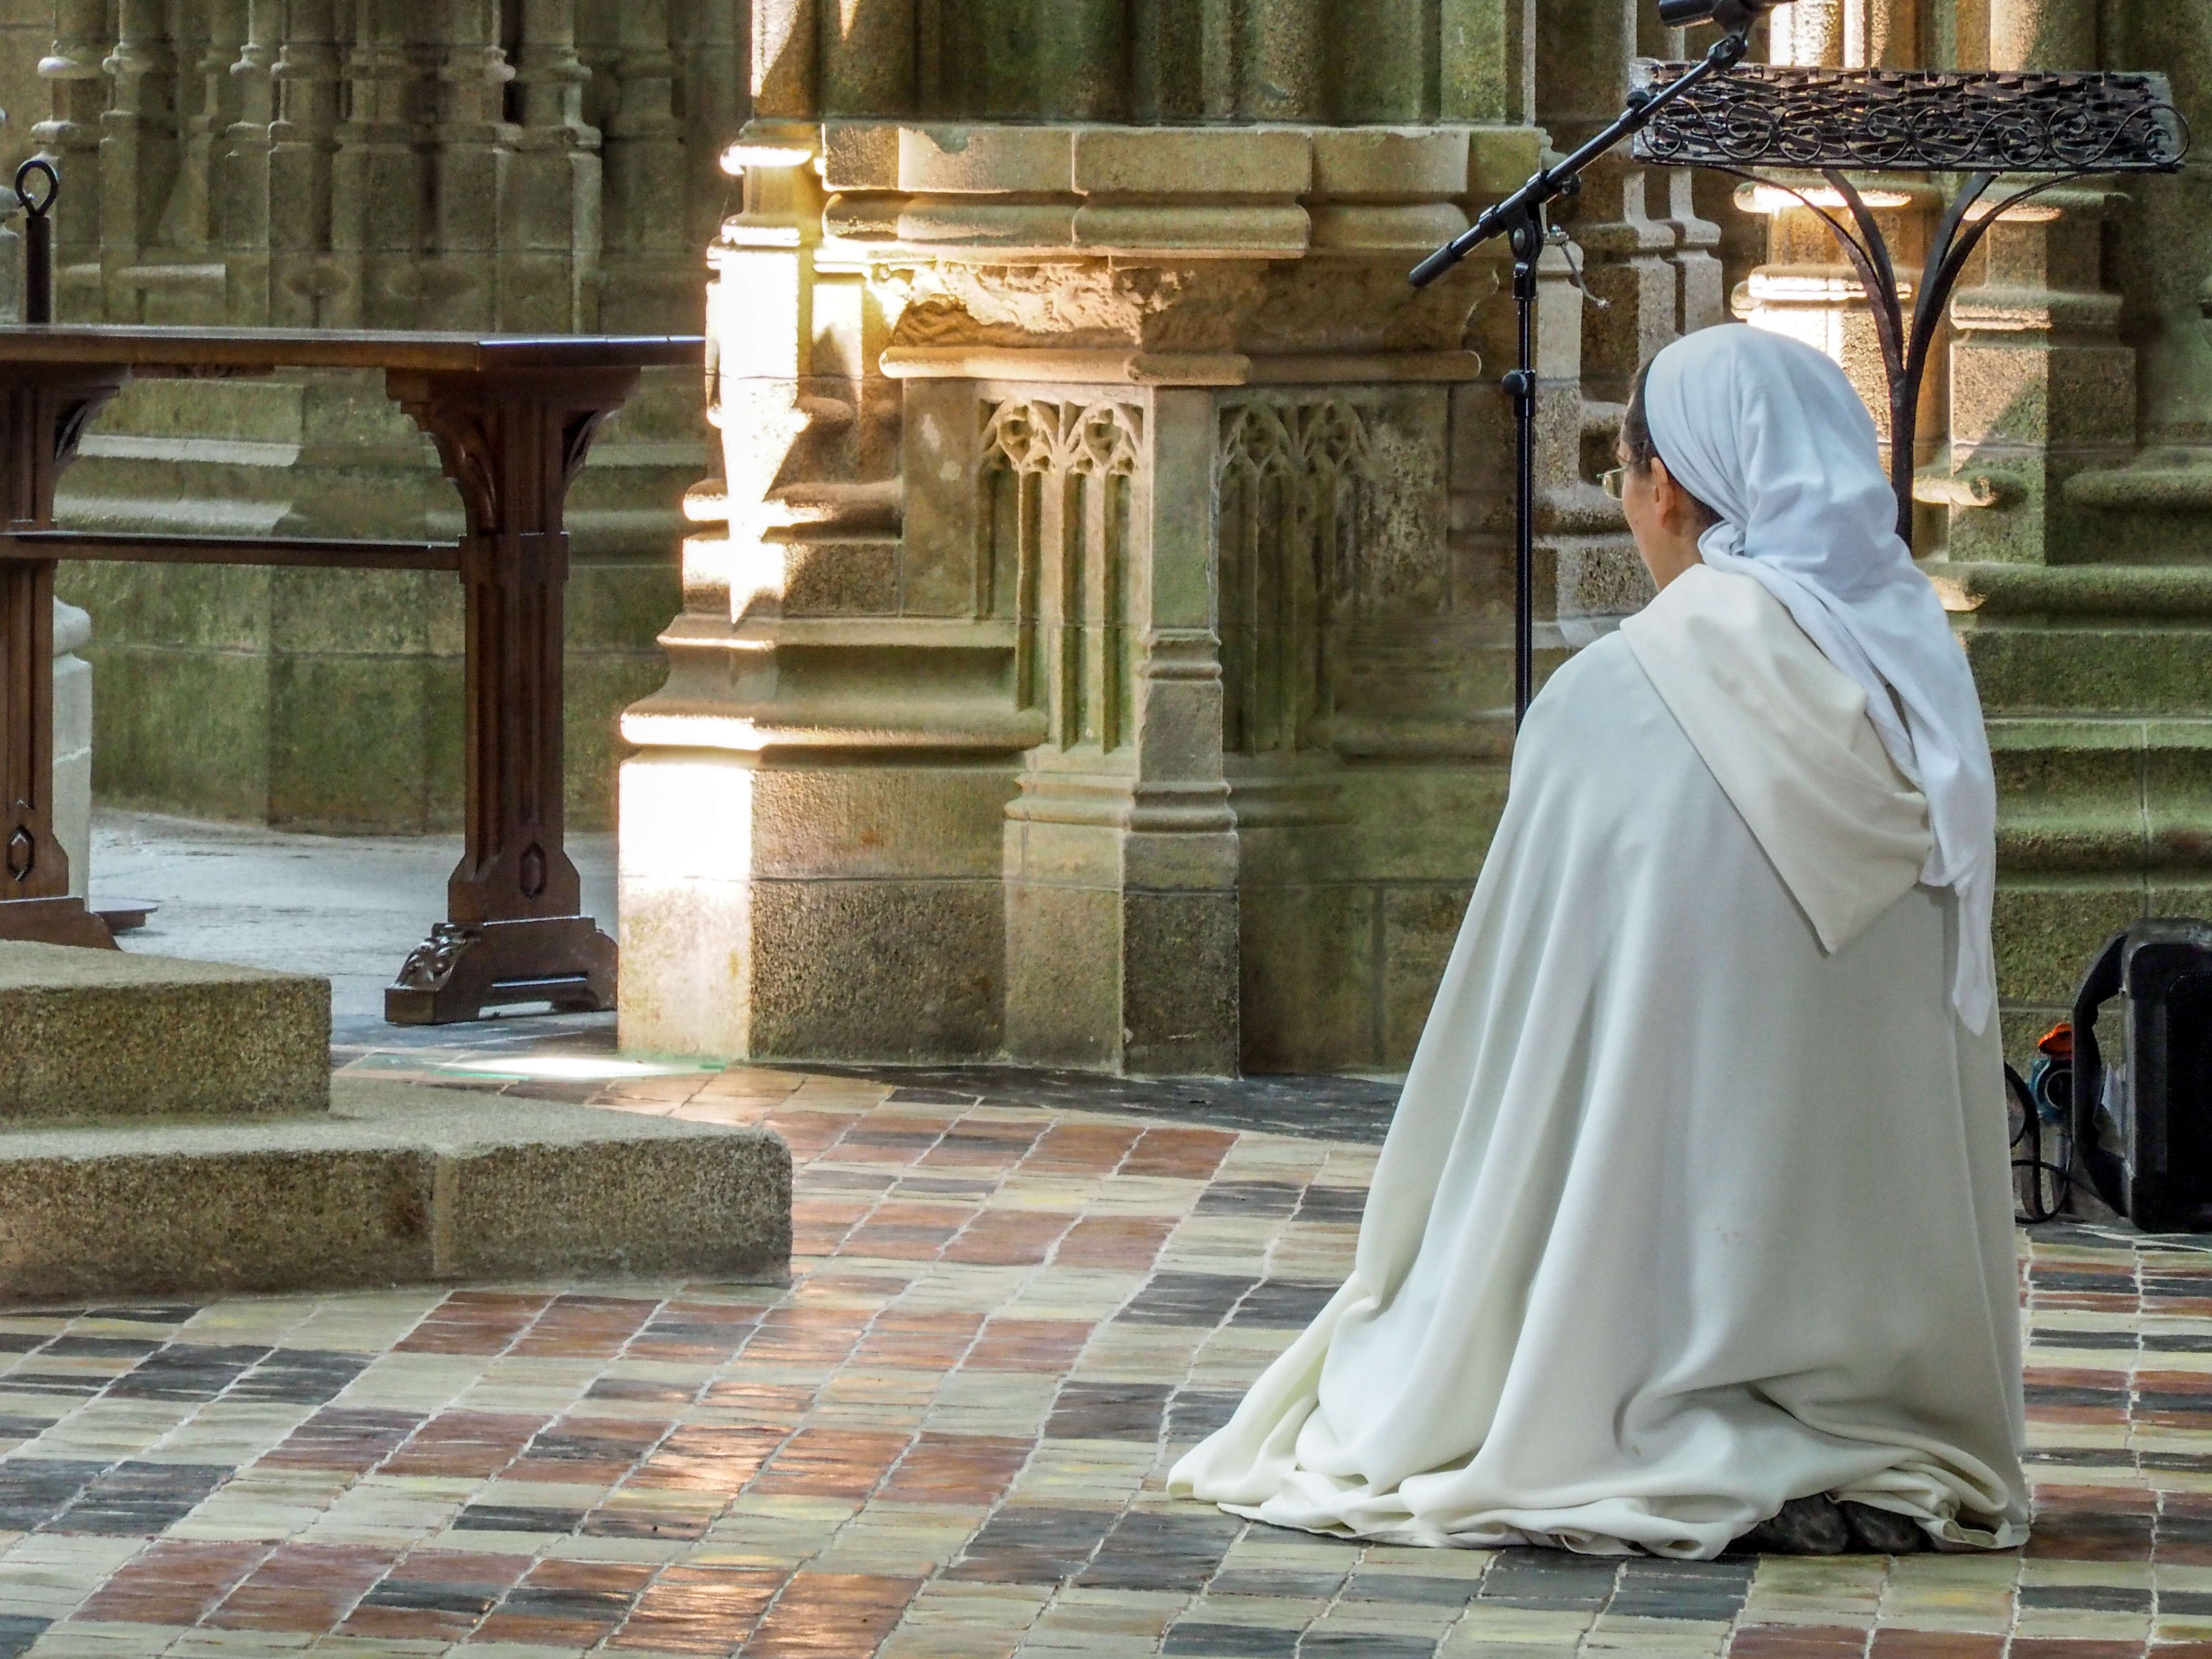 Cea mai vârstnică persoană din Europa, o călugăriţă franceză de 117 ani, s-a vindecat de Covid-19